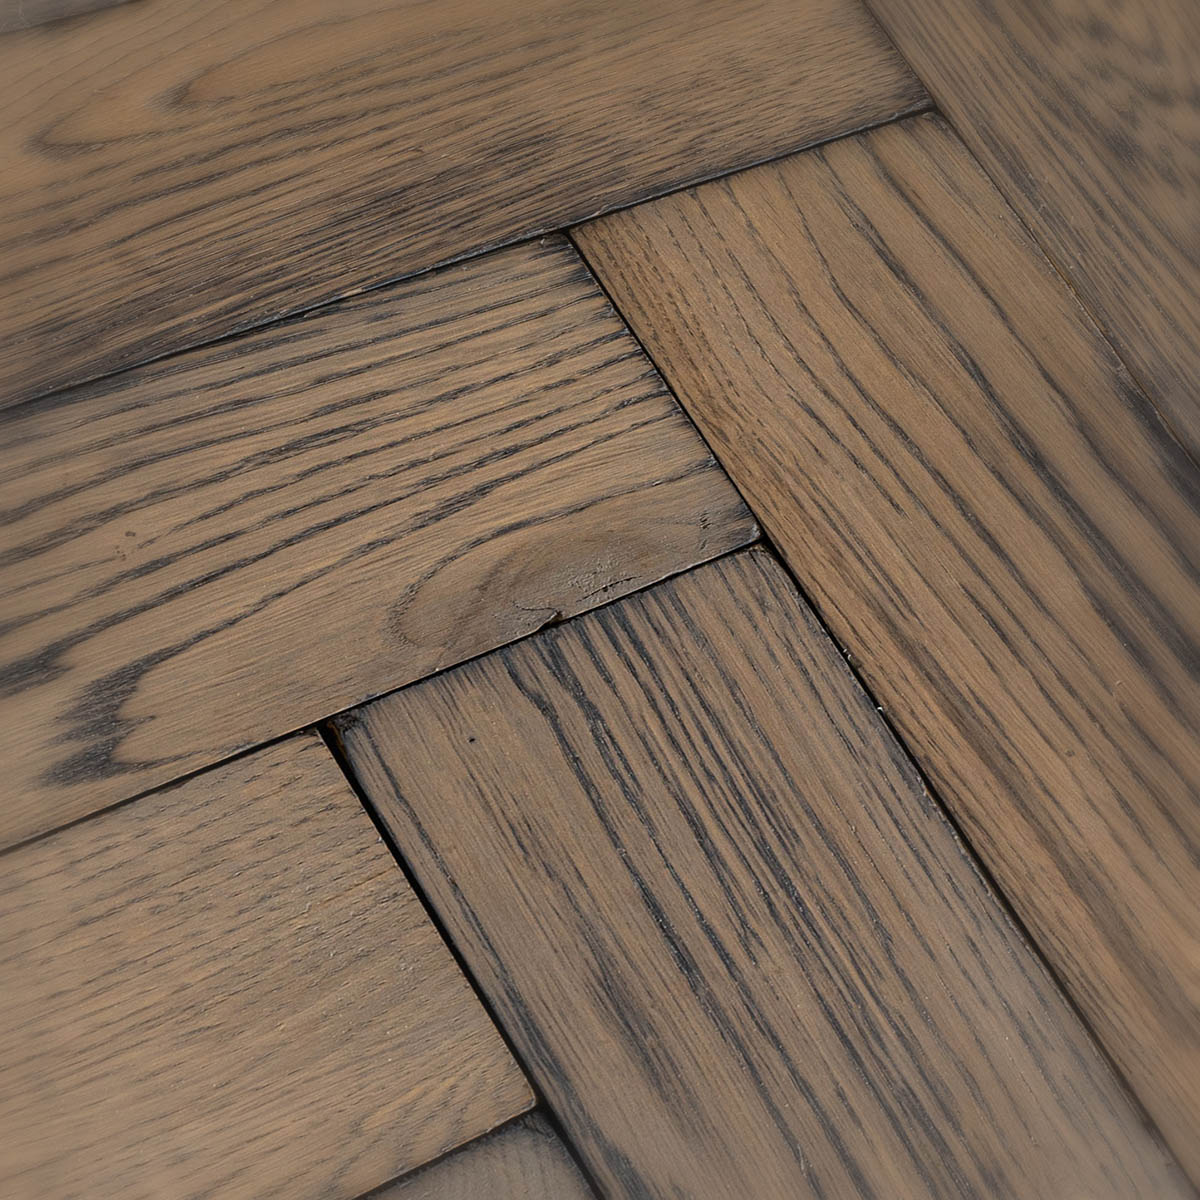 Vine Lane - Solid Oak Distressed Herringbone Floor